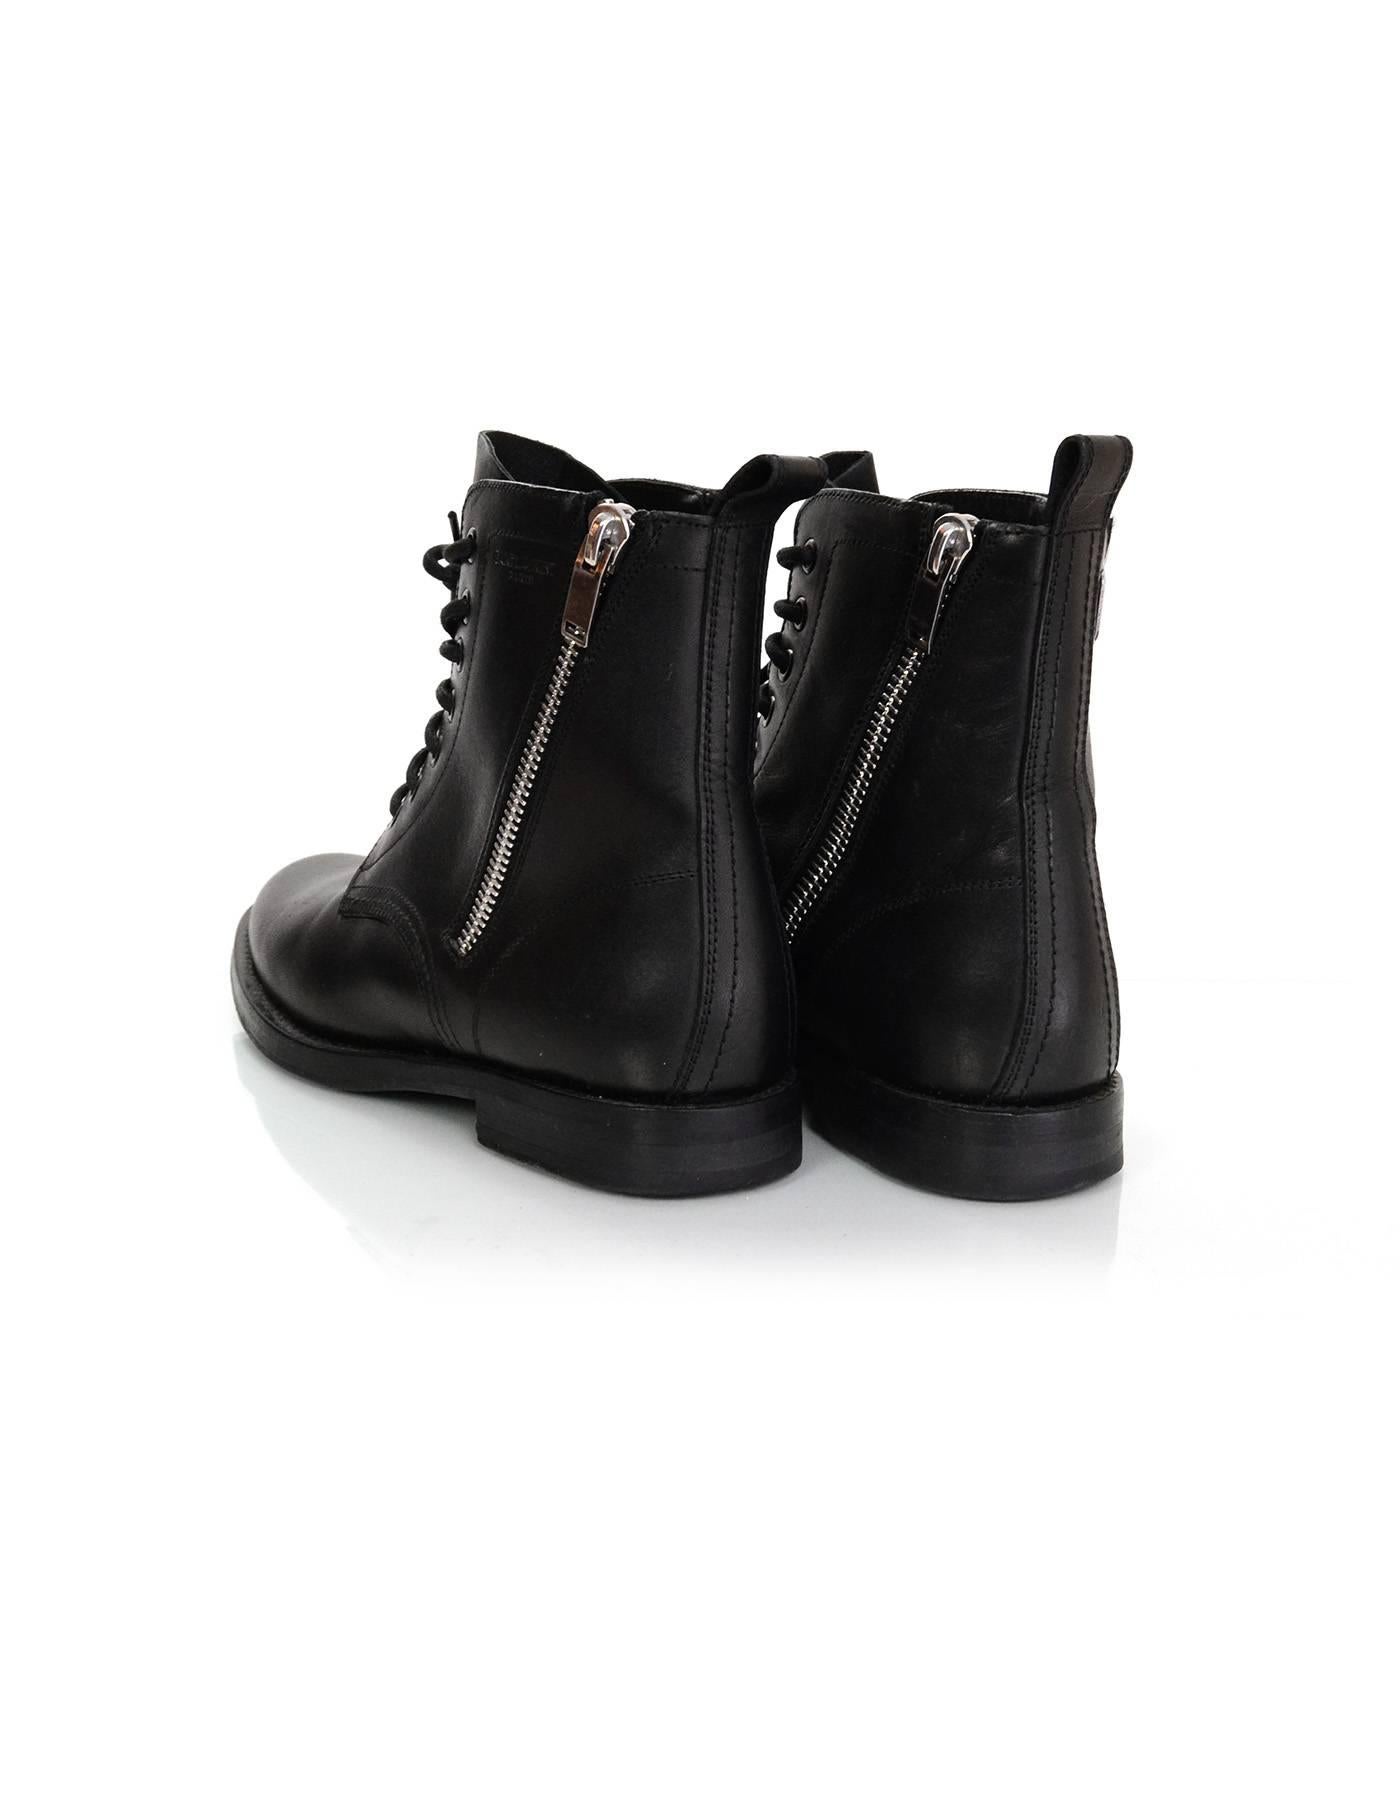 Saint Laurent Black Leather Combat Ankle Boots Sz 38.5 rt. $1, 295 2